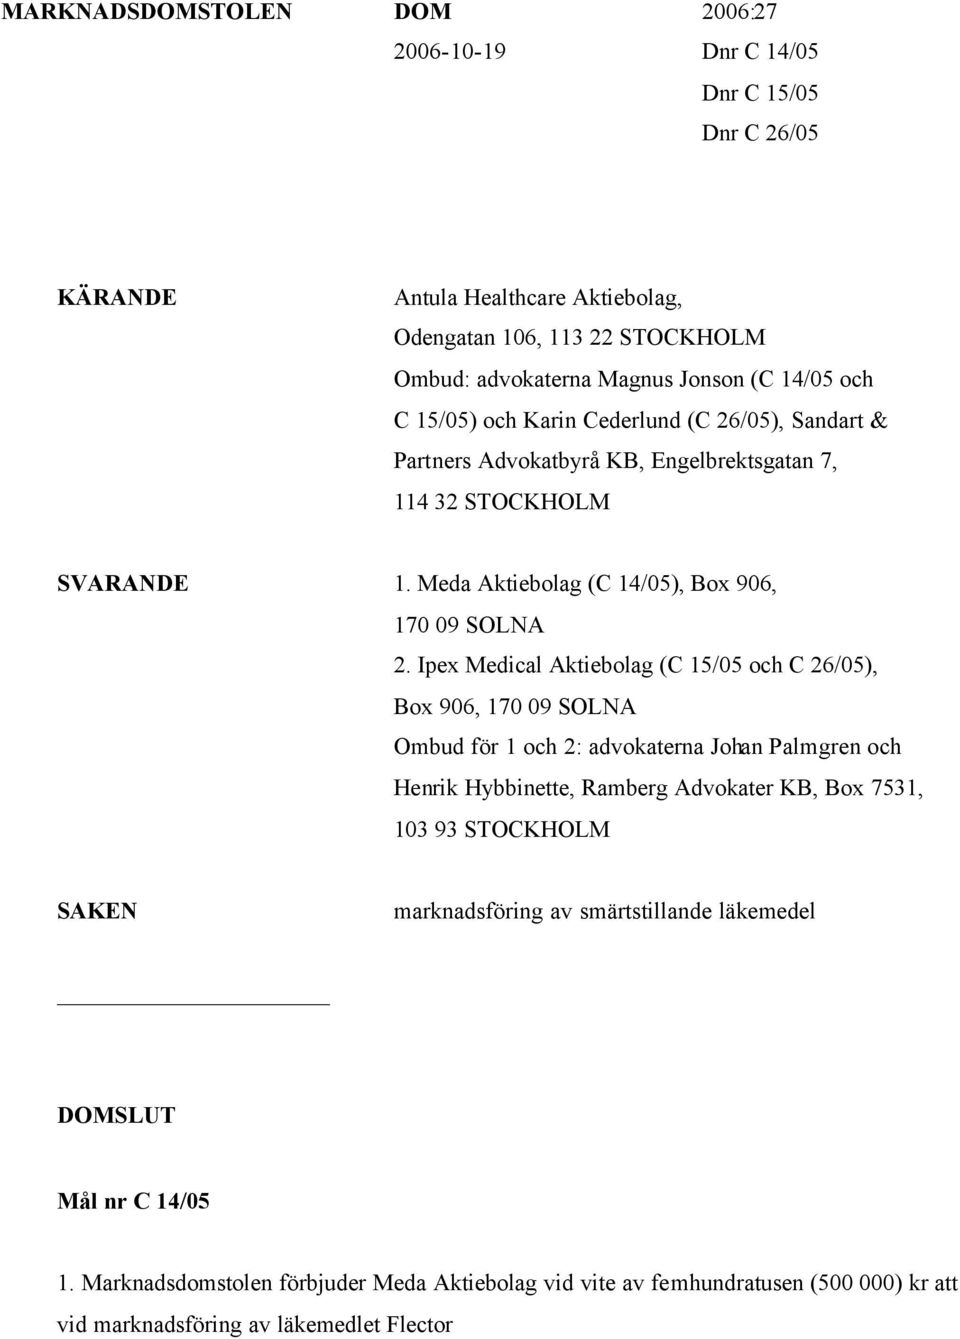 Ipex Medical Aktiebolag (C 15/05 och C 26/05), Box 906, 170 09 SOLNA Ombud för 1 och 2: advokaterna Johan Palmgren och Henrik Hybbinette, Ramberg Advokater KB, Box 7531, 103 93 STOCKHOLM